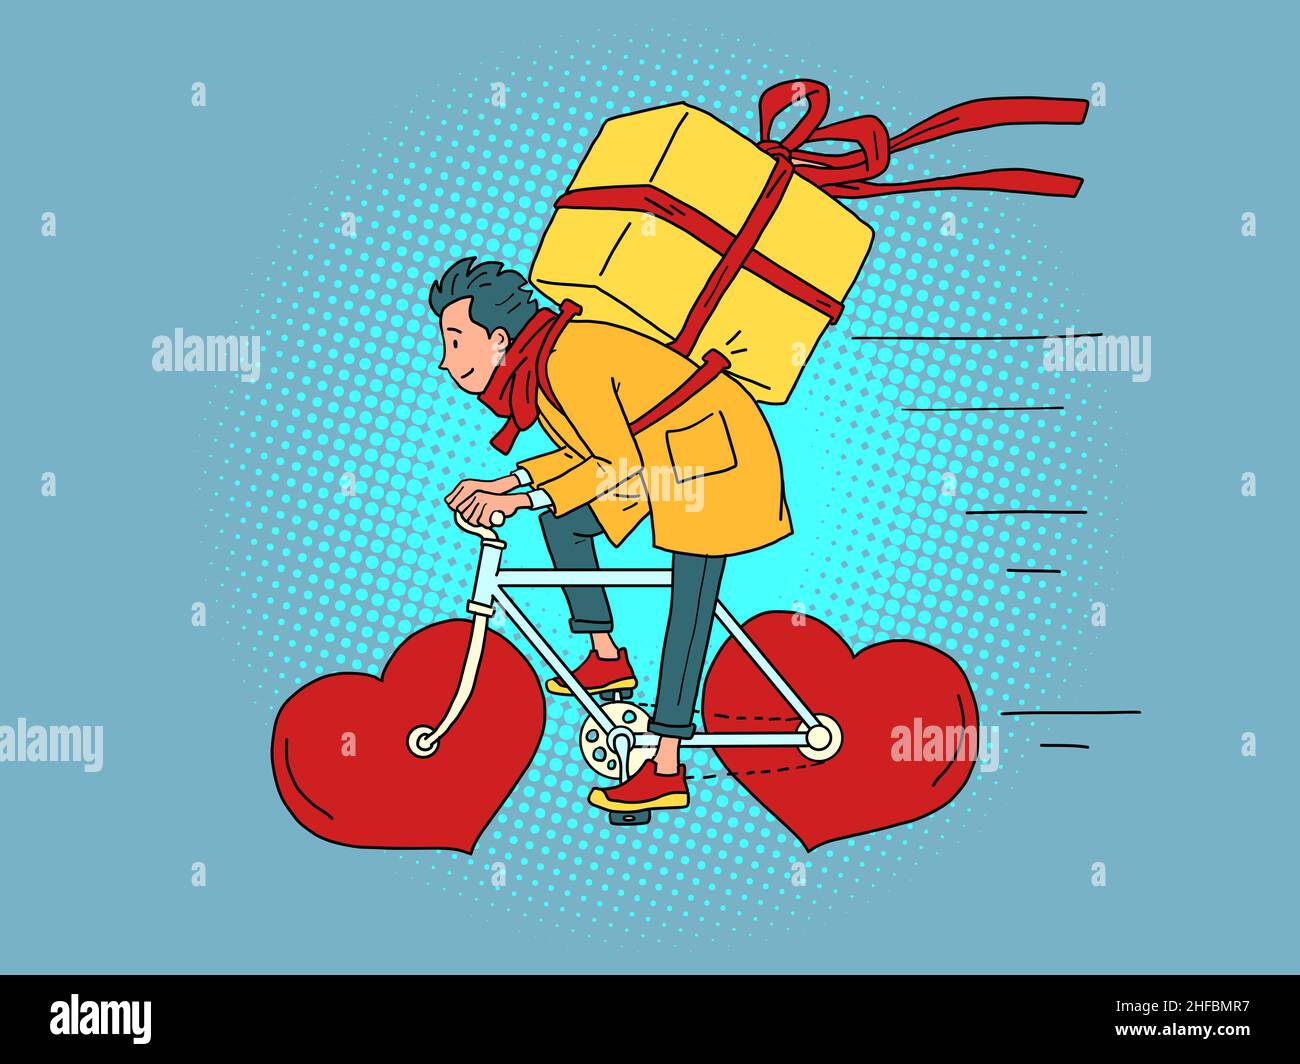 Lieferung von Lebensmitteln per Kurier auf einem Fahrrad, Valentinstag. Rotes Herz statt Räder Stock Vektor